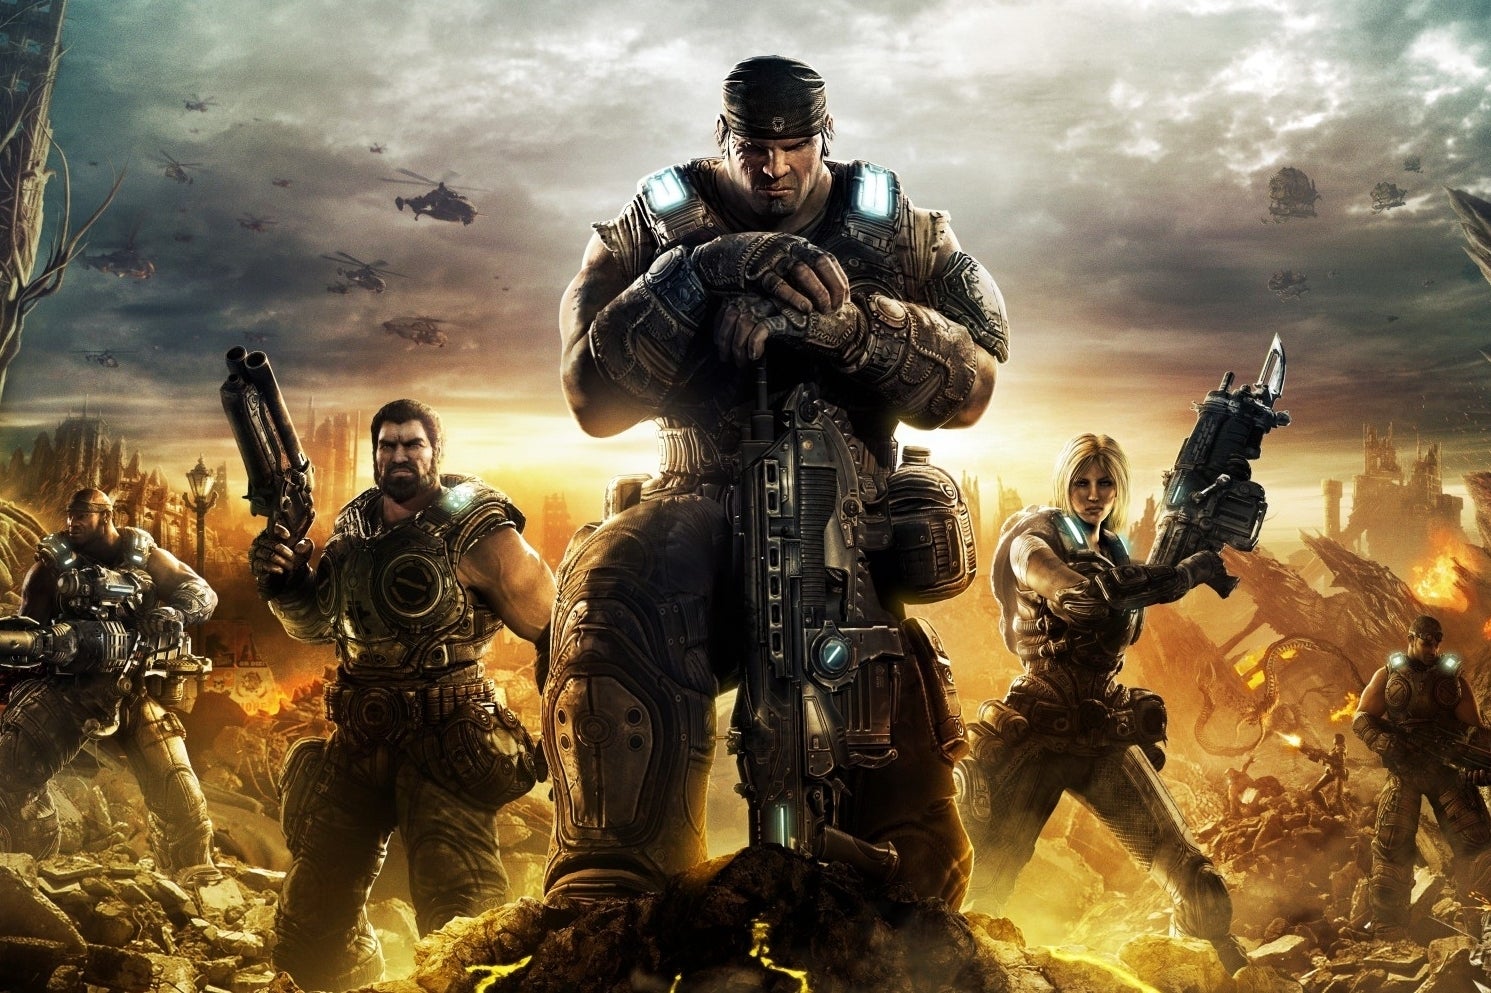 Immagine di Gears of War potrebbe sbarcare su PS4?